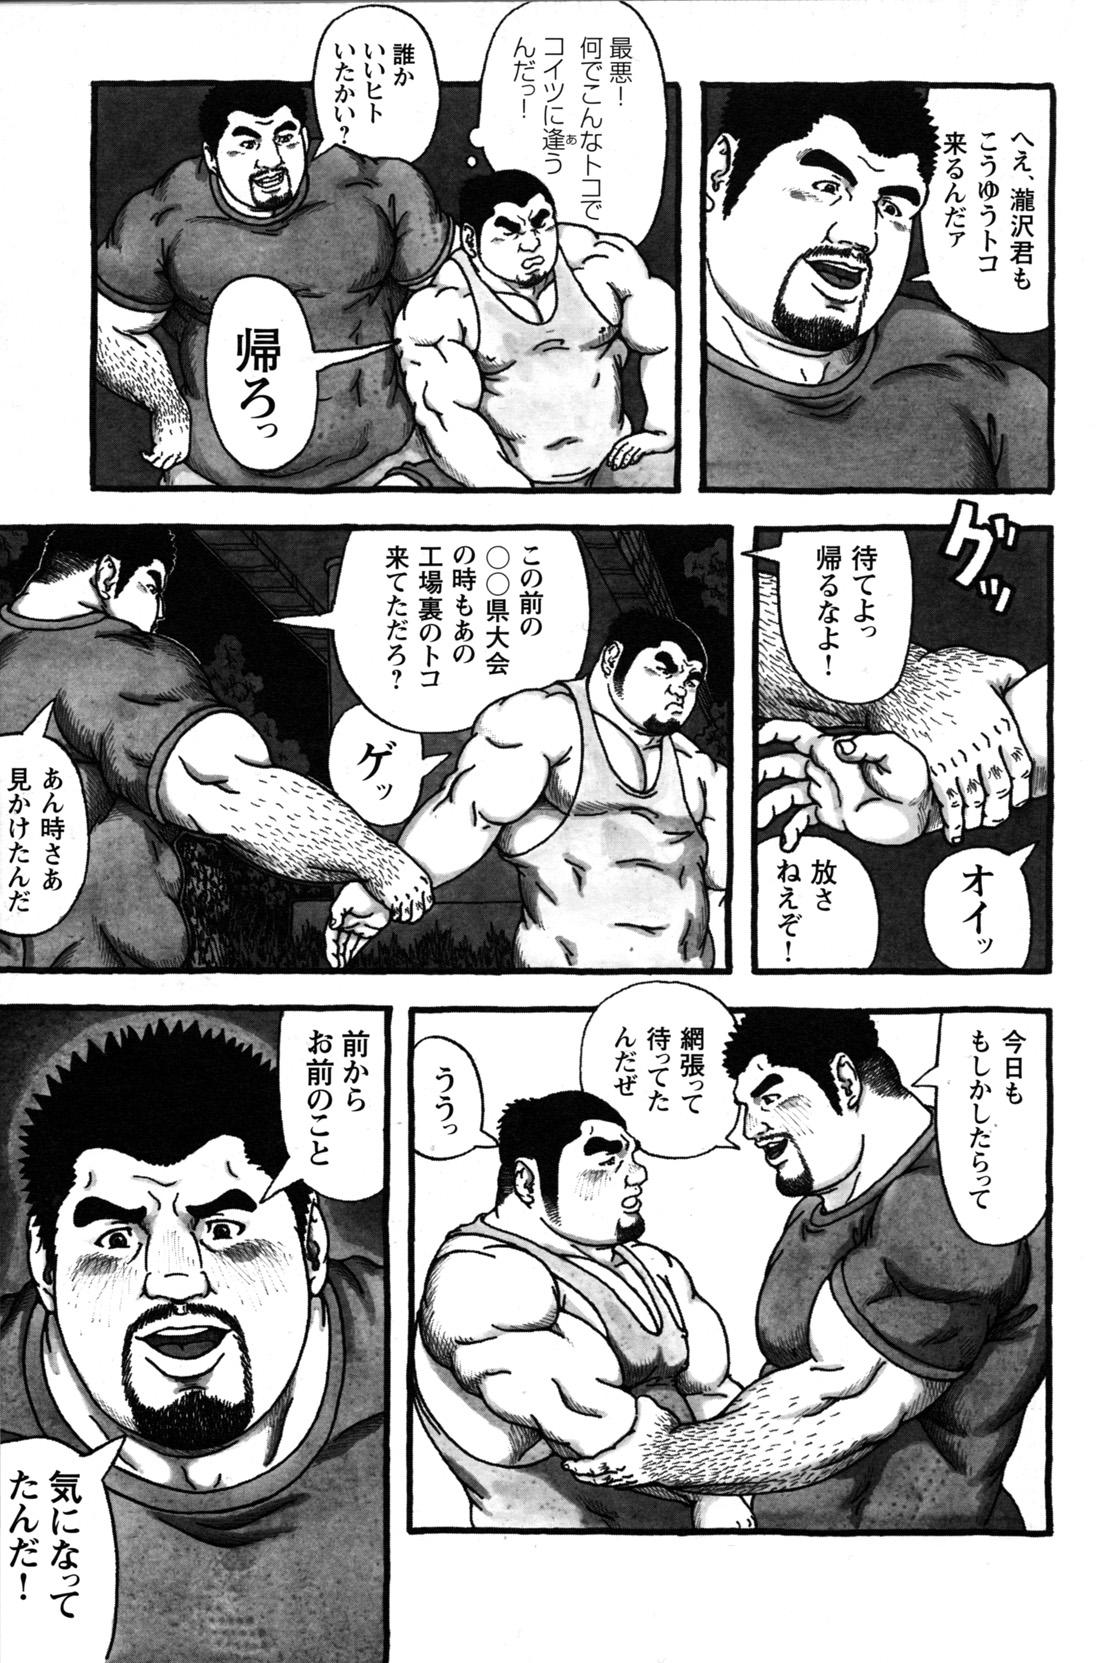 Comic G-men Gaho No.09 Gacchibi Zeme 151